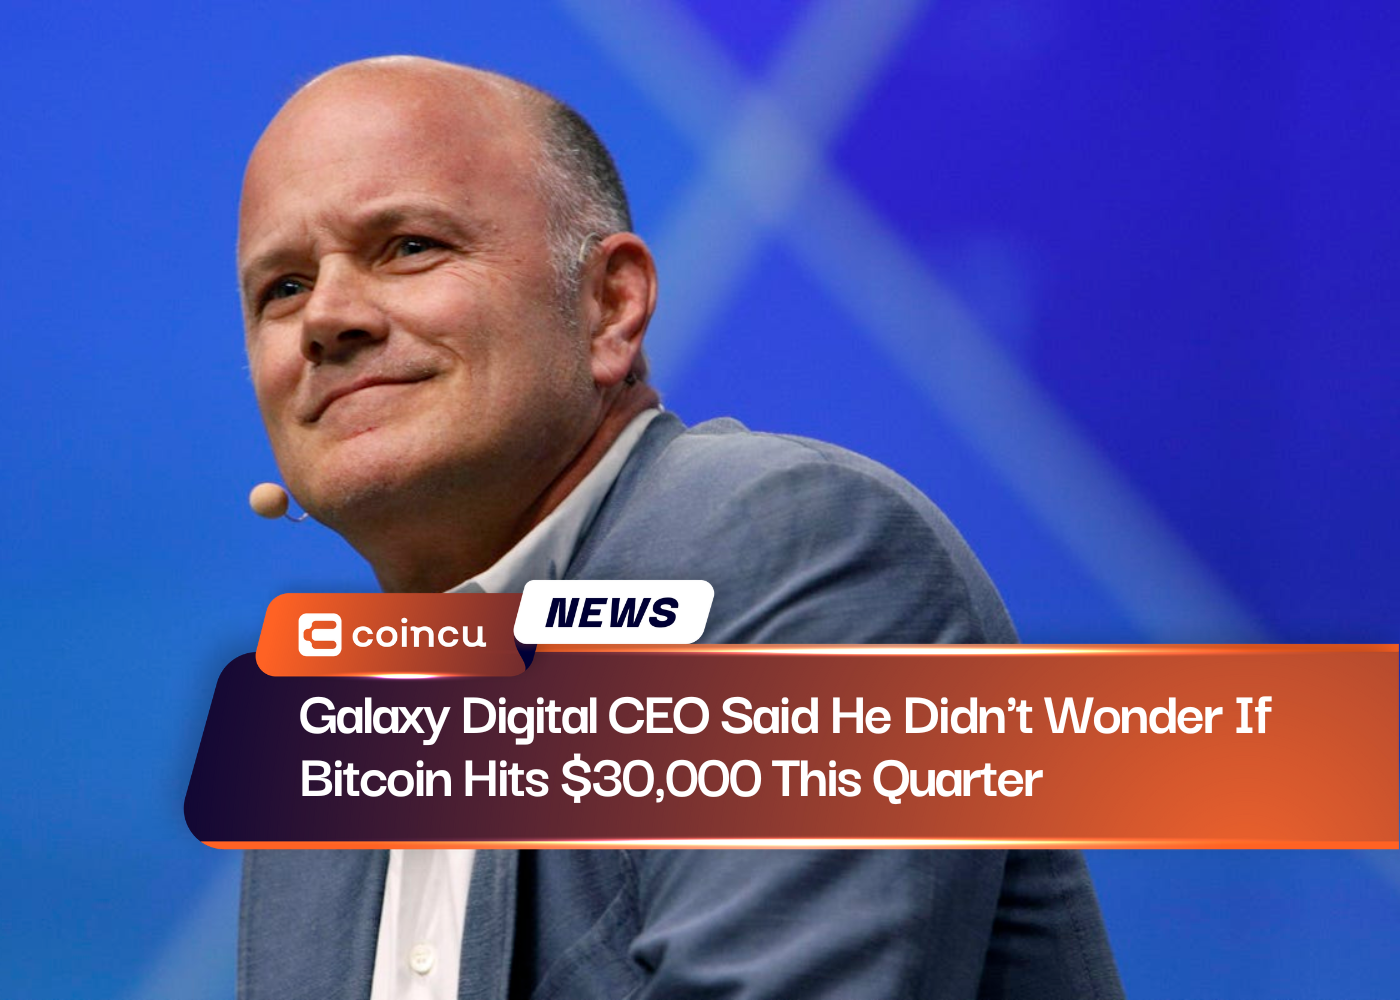 Galaxy Digital CEO Said He Didn't Wonder If Bitcoin Hits $30,000 This Quarter